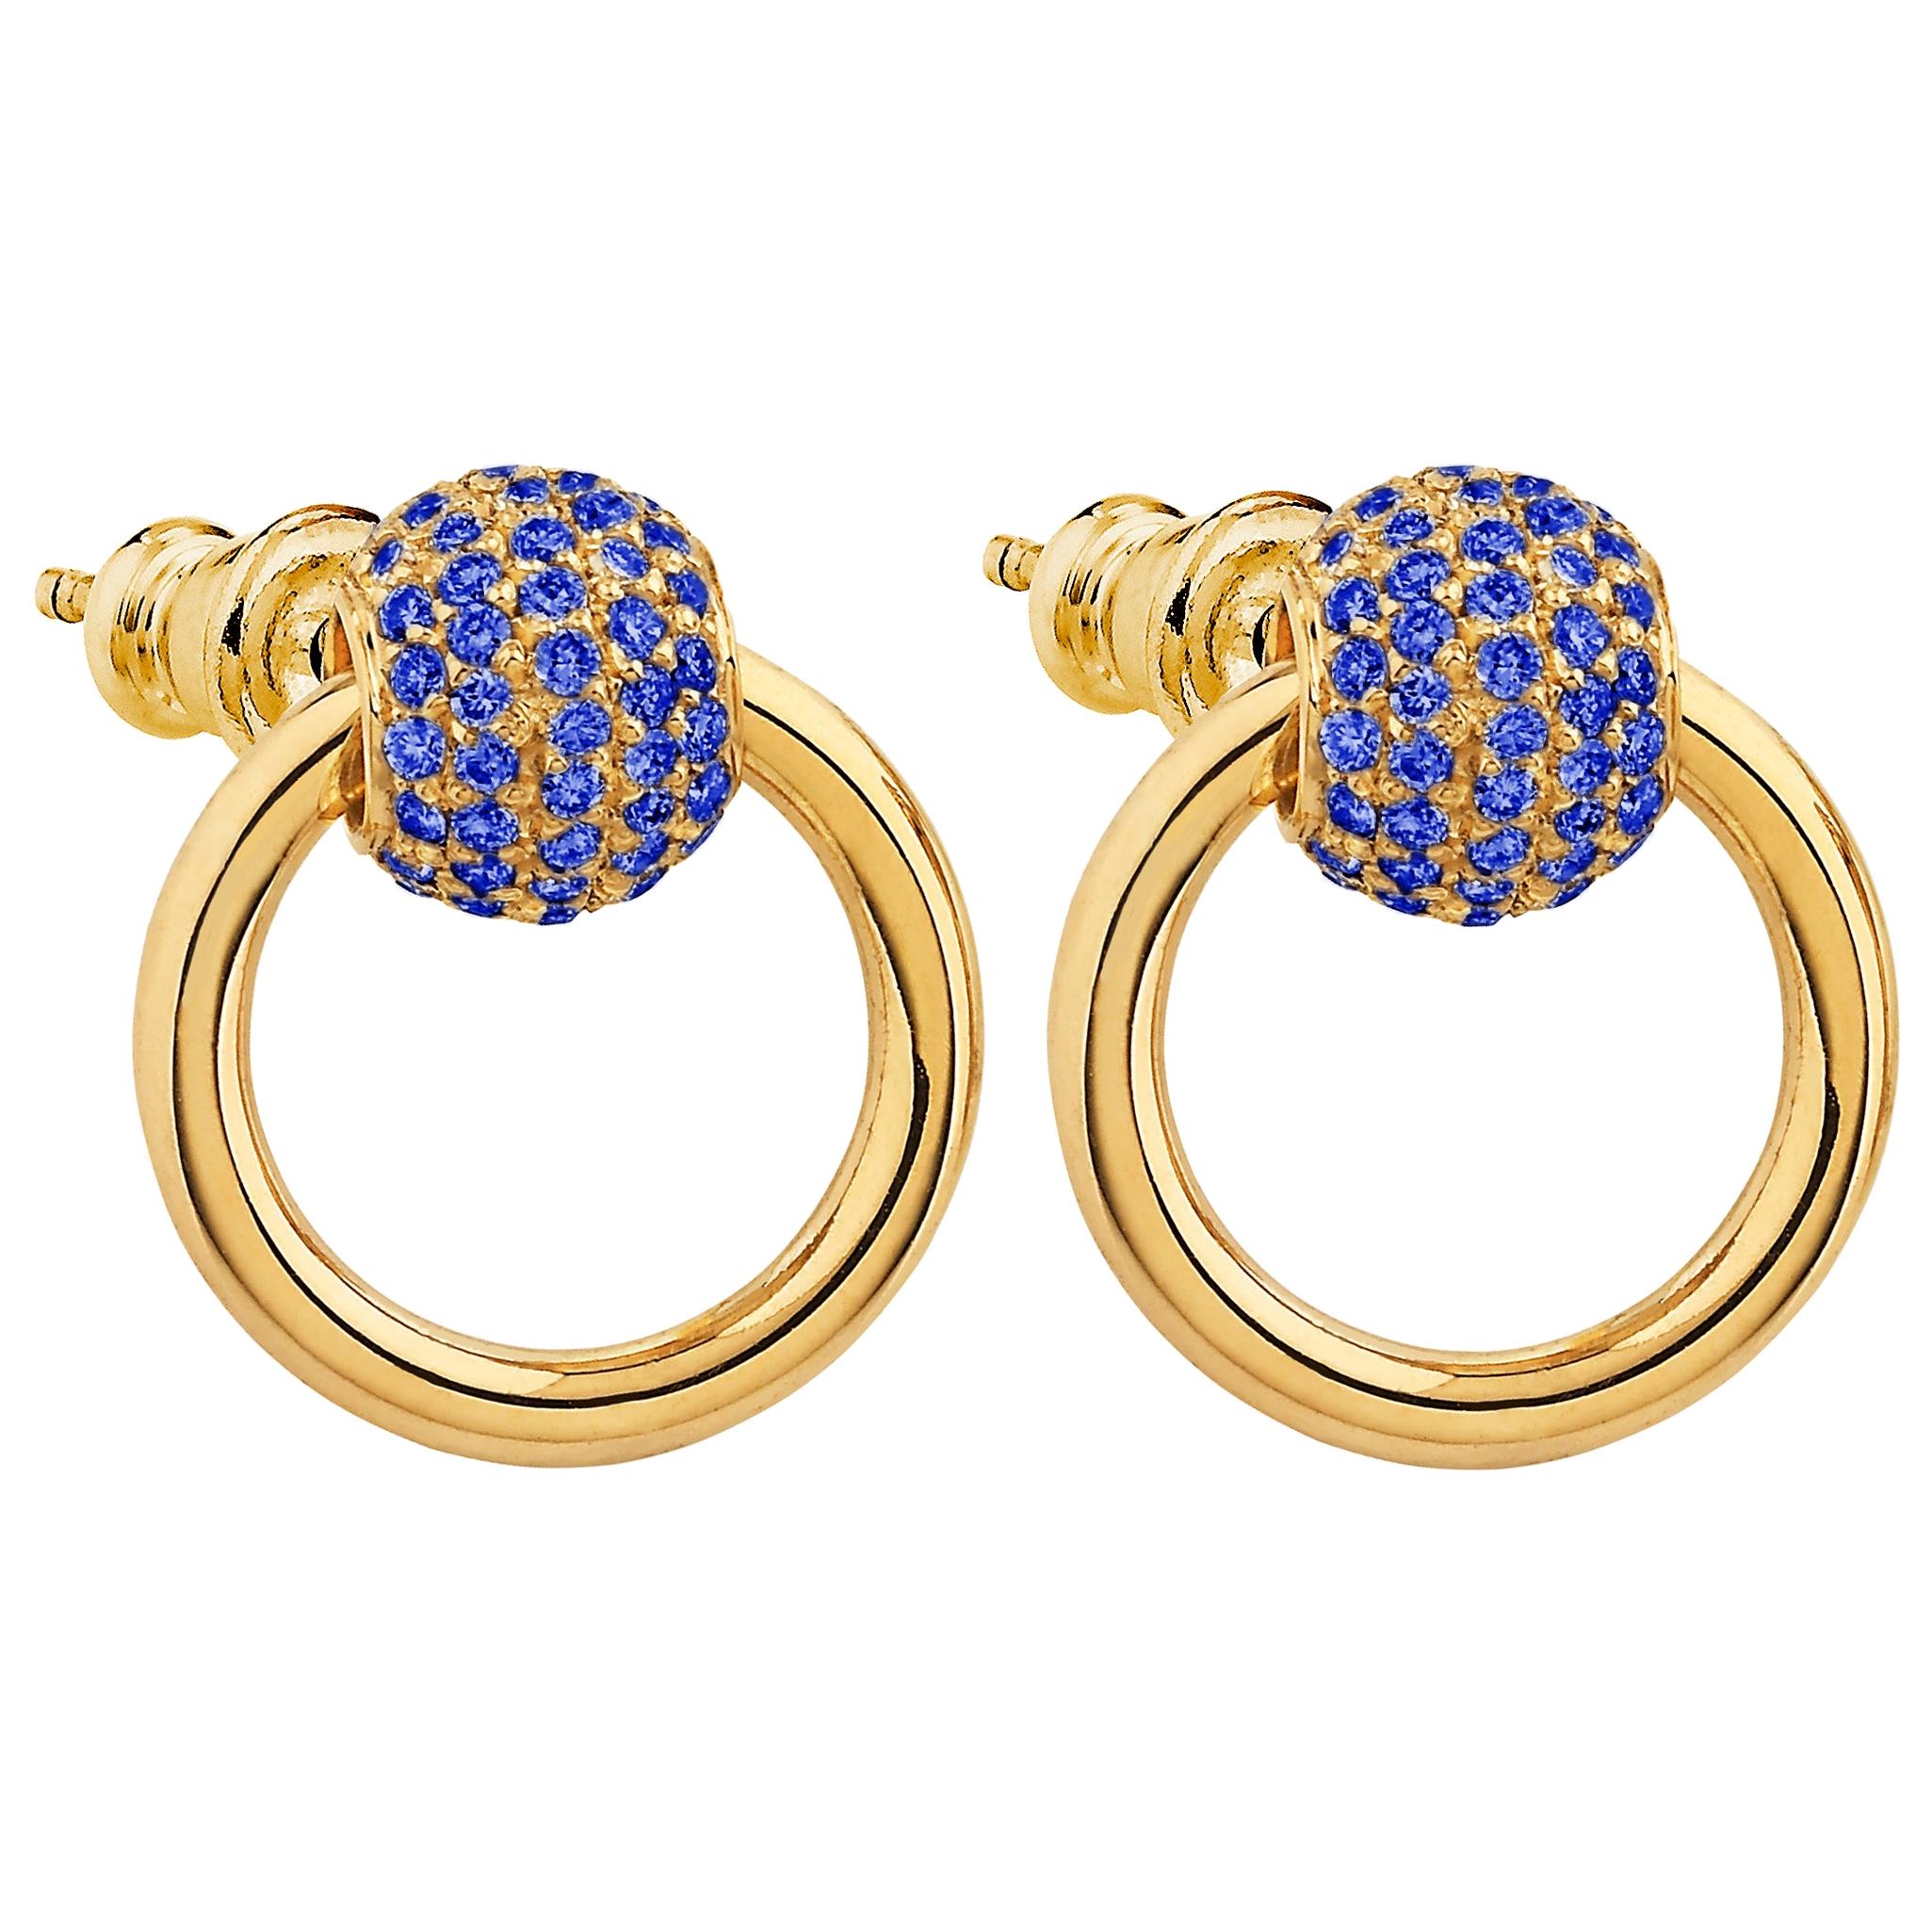 Betony Vernon "O'Ring Earrings Sapphire Pavée" 18 Karat Gold